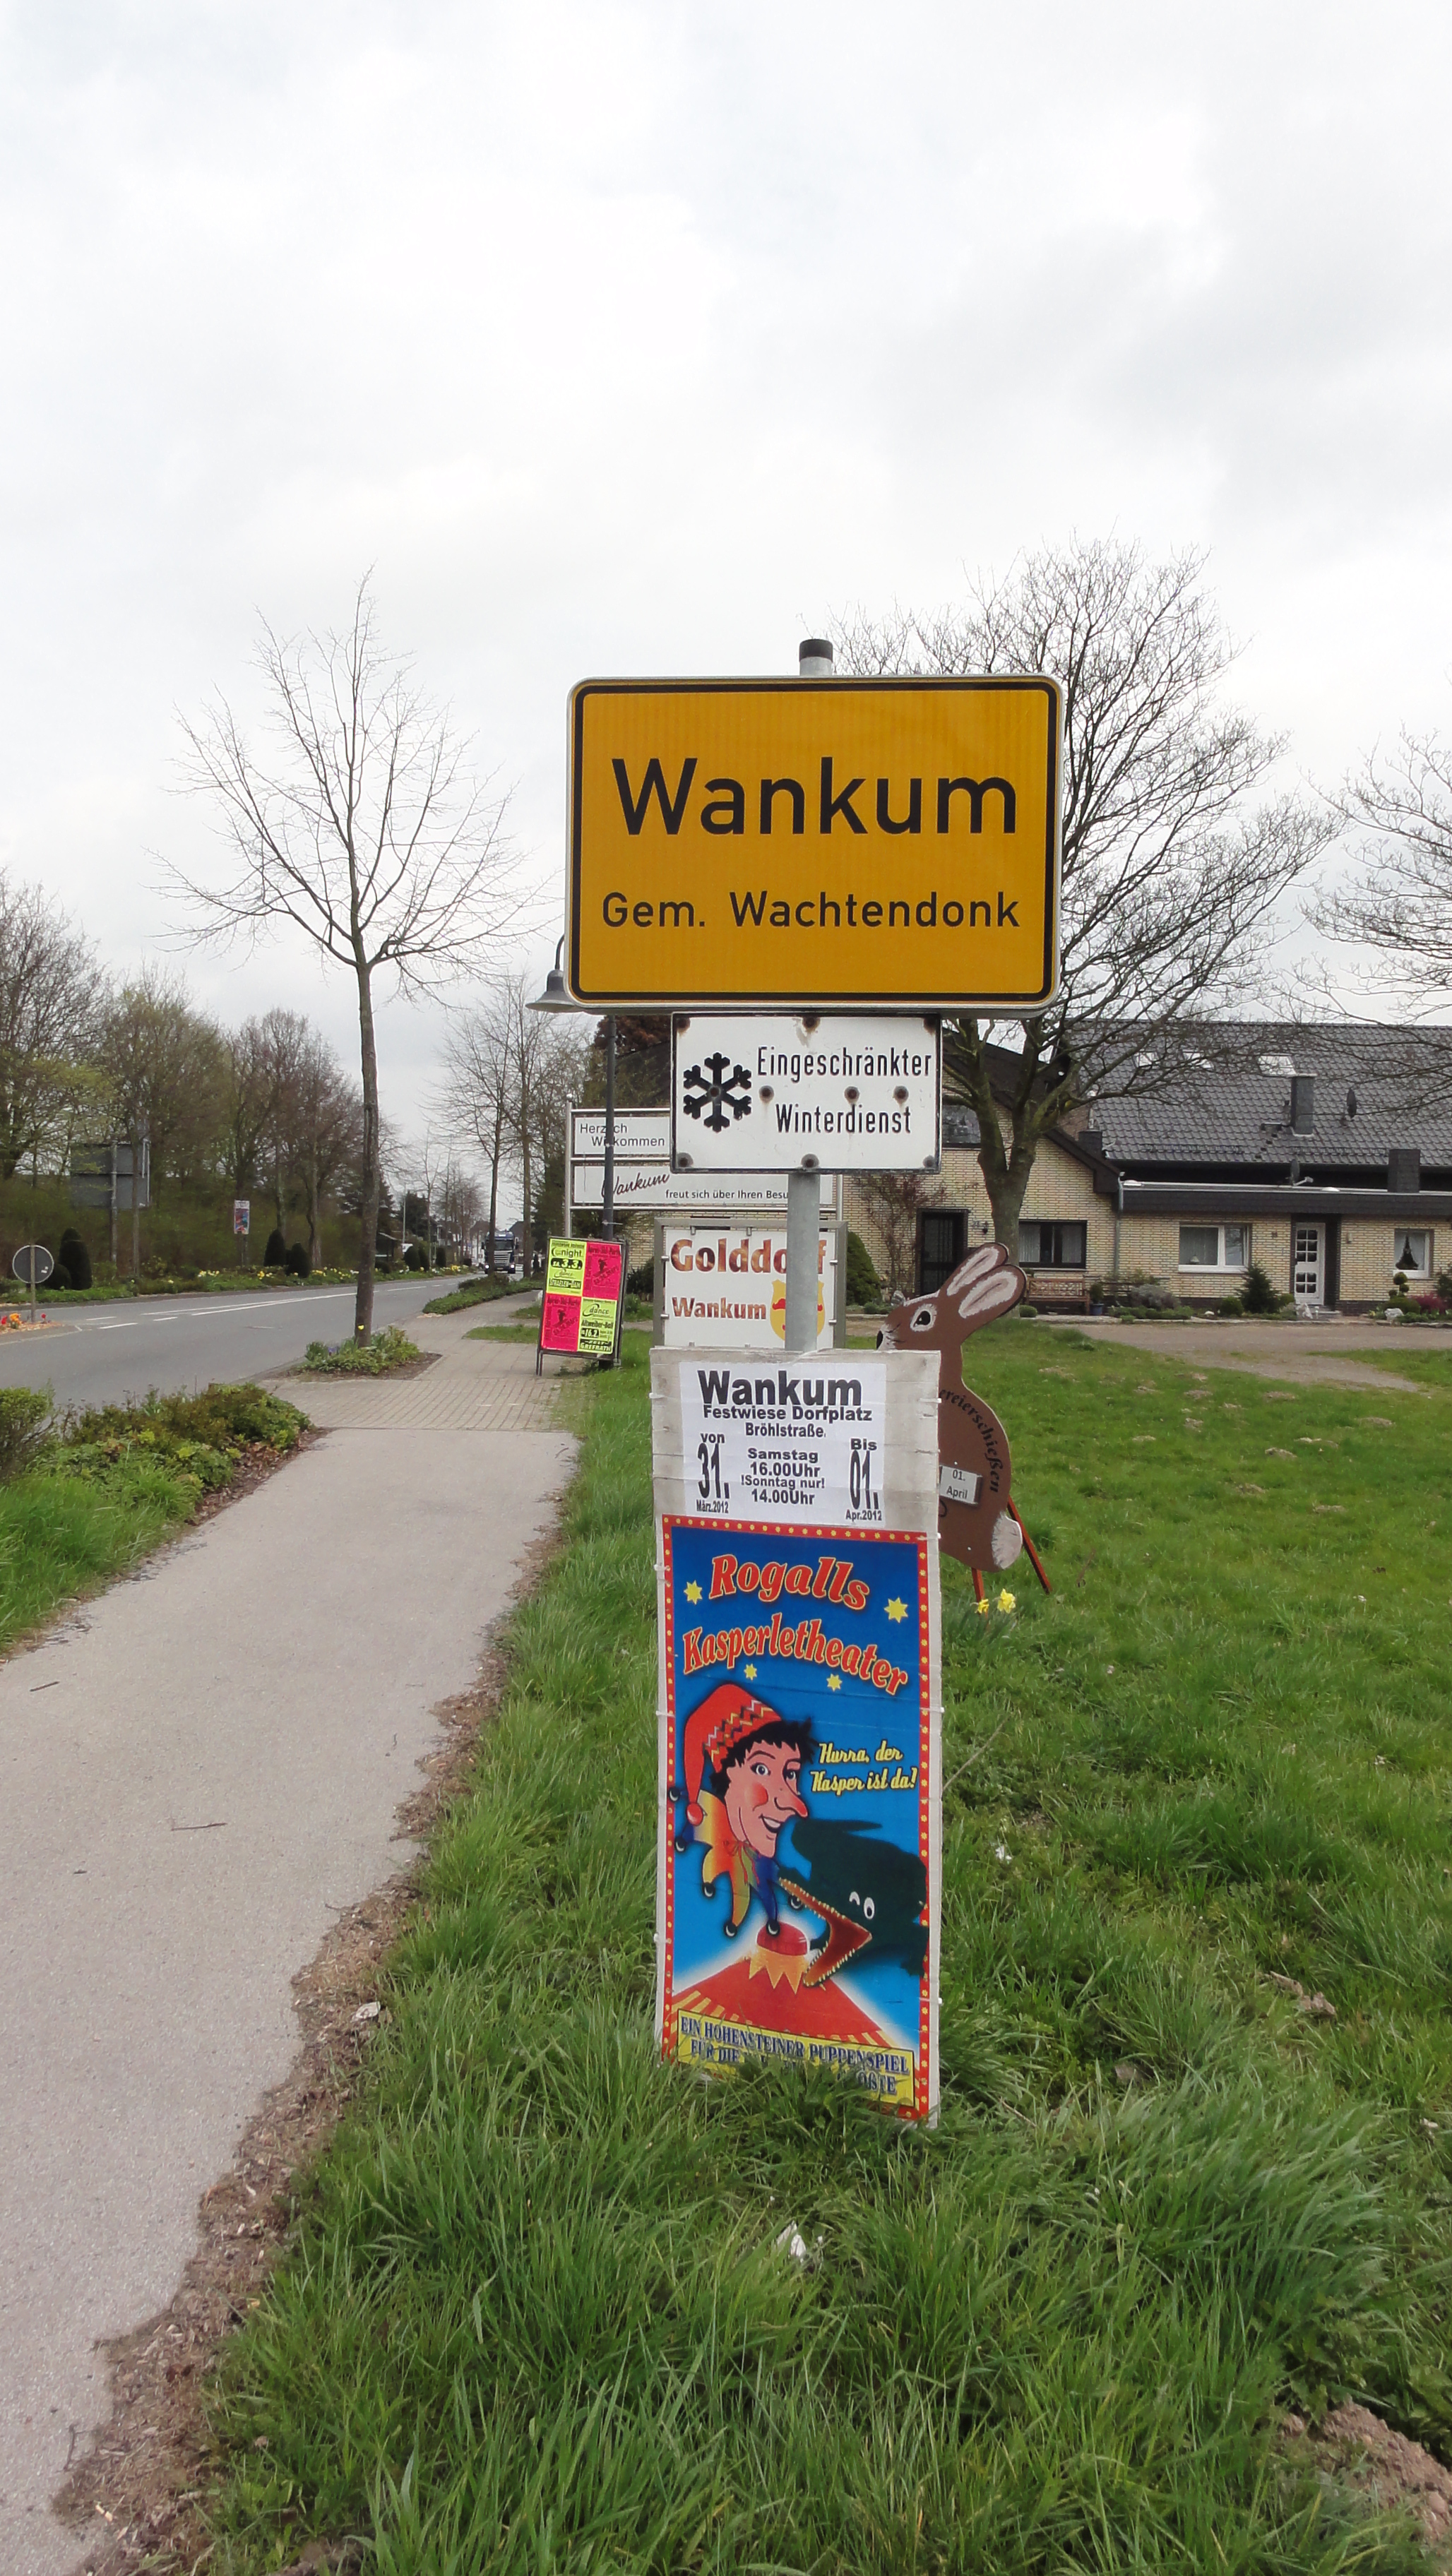 016-great-german-town-name-wankum.jpg